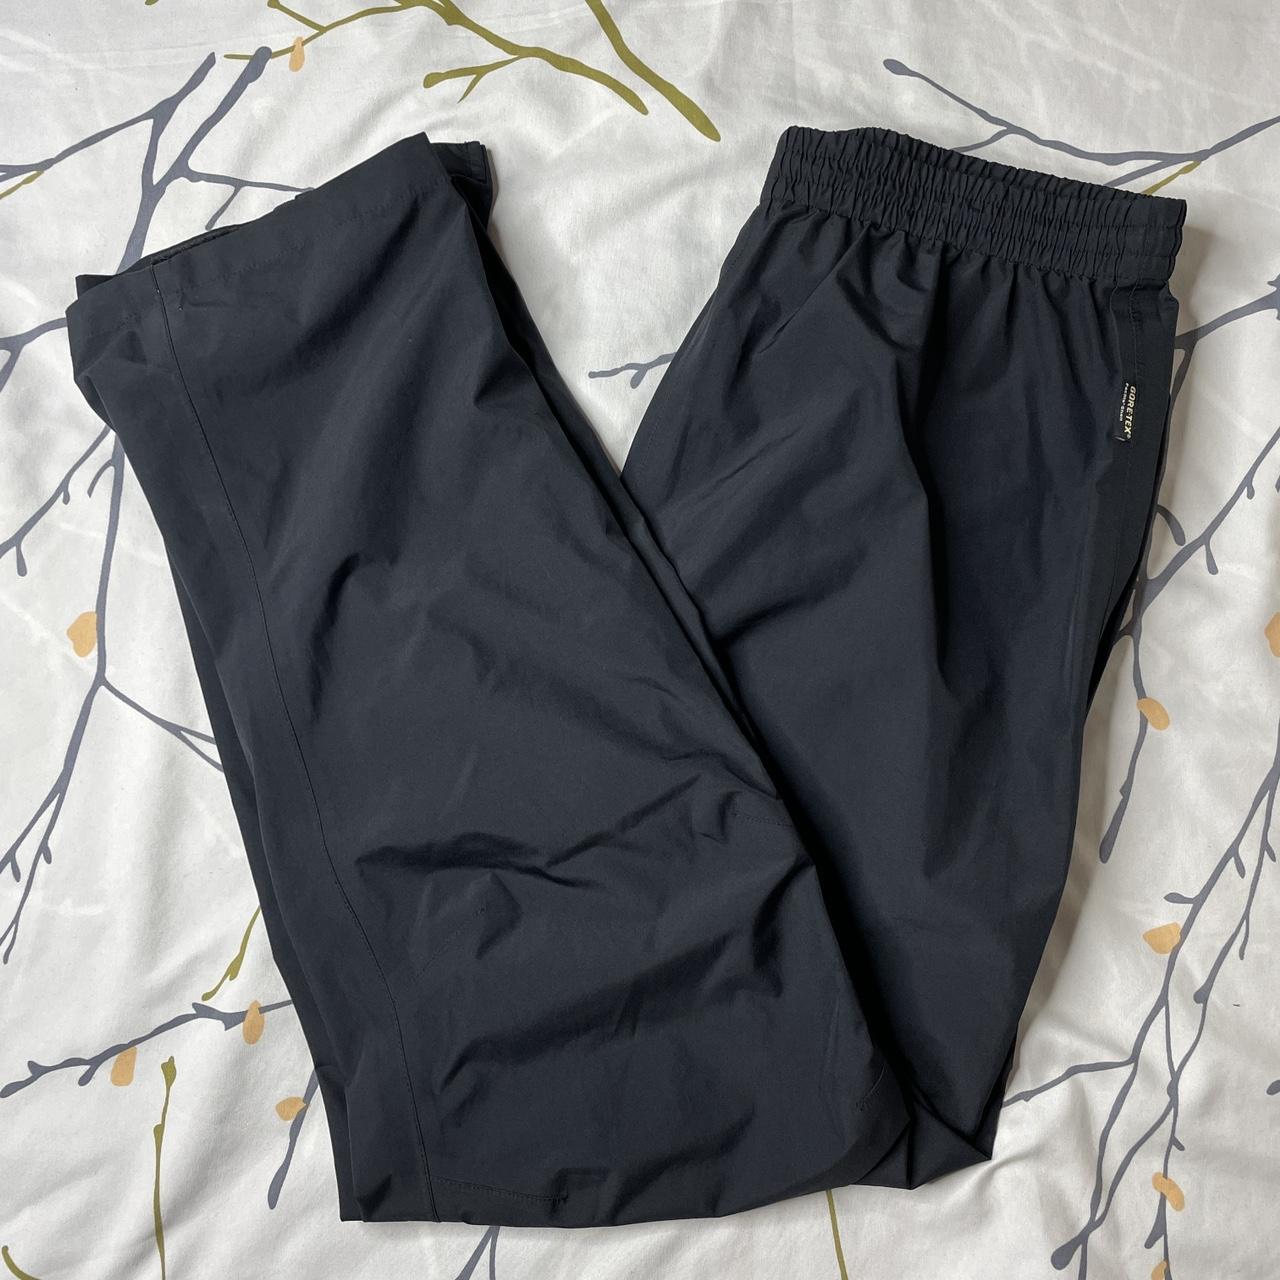 Product Image 1 - Gortex Pants Black Size Medium
One